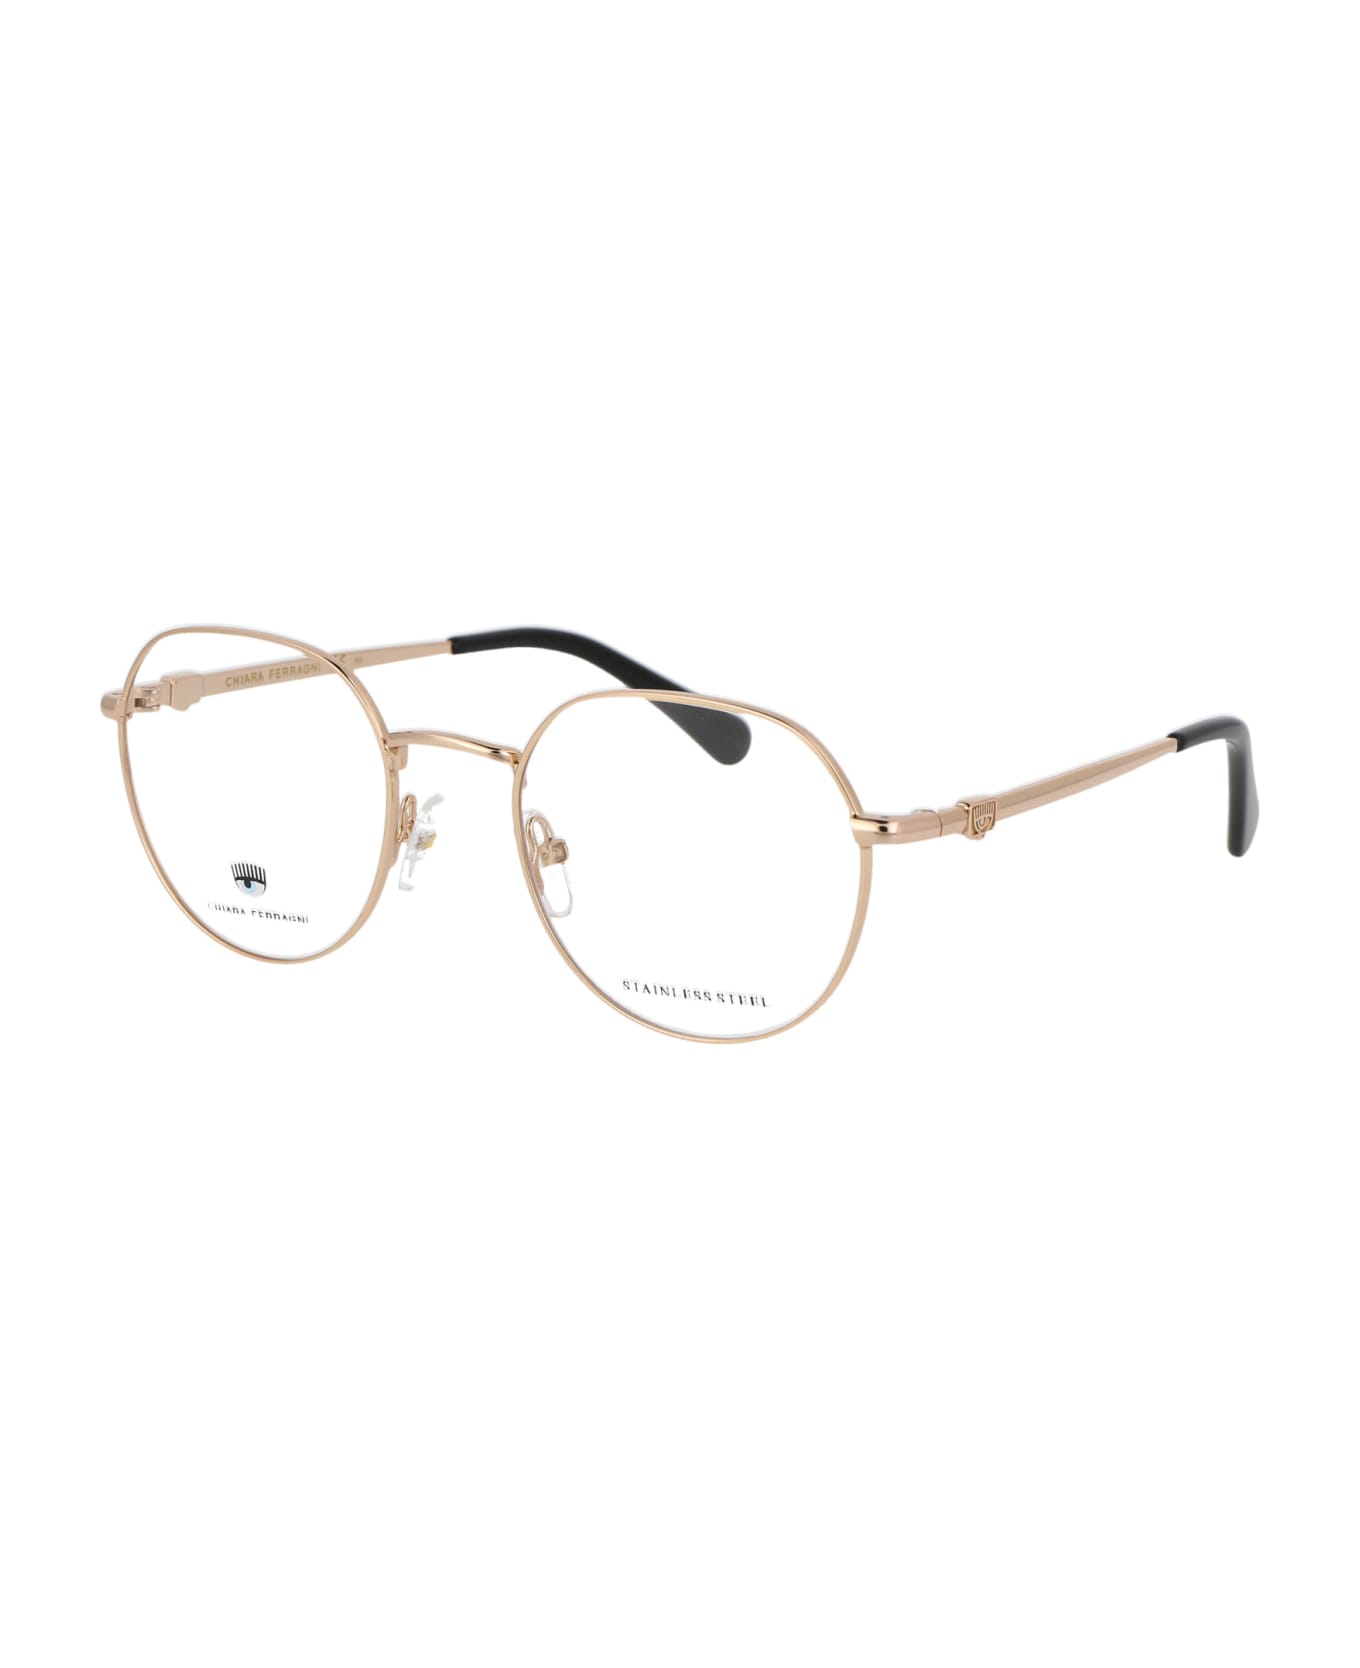 Chiara Ferragni Cf 1012 Glasses - J5G GOLD